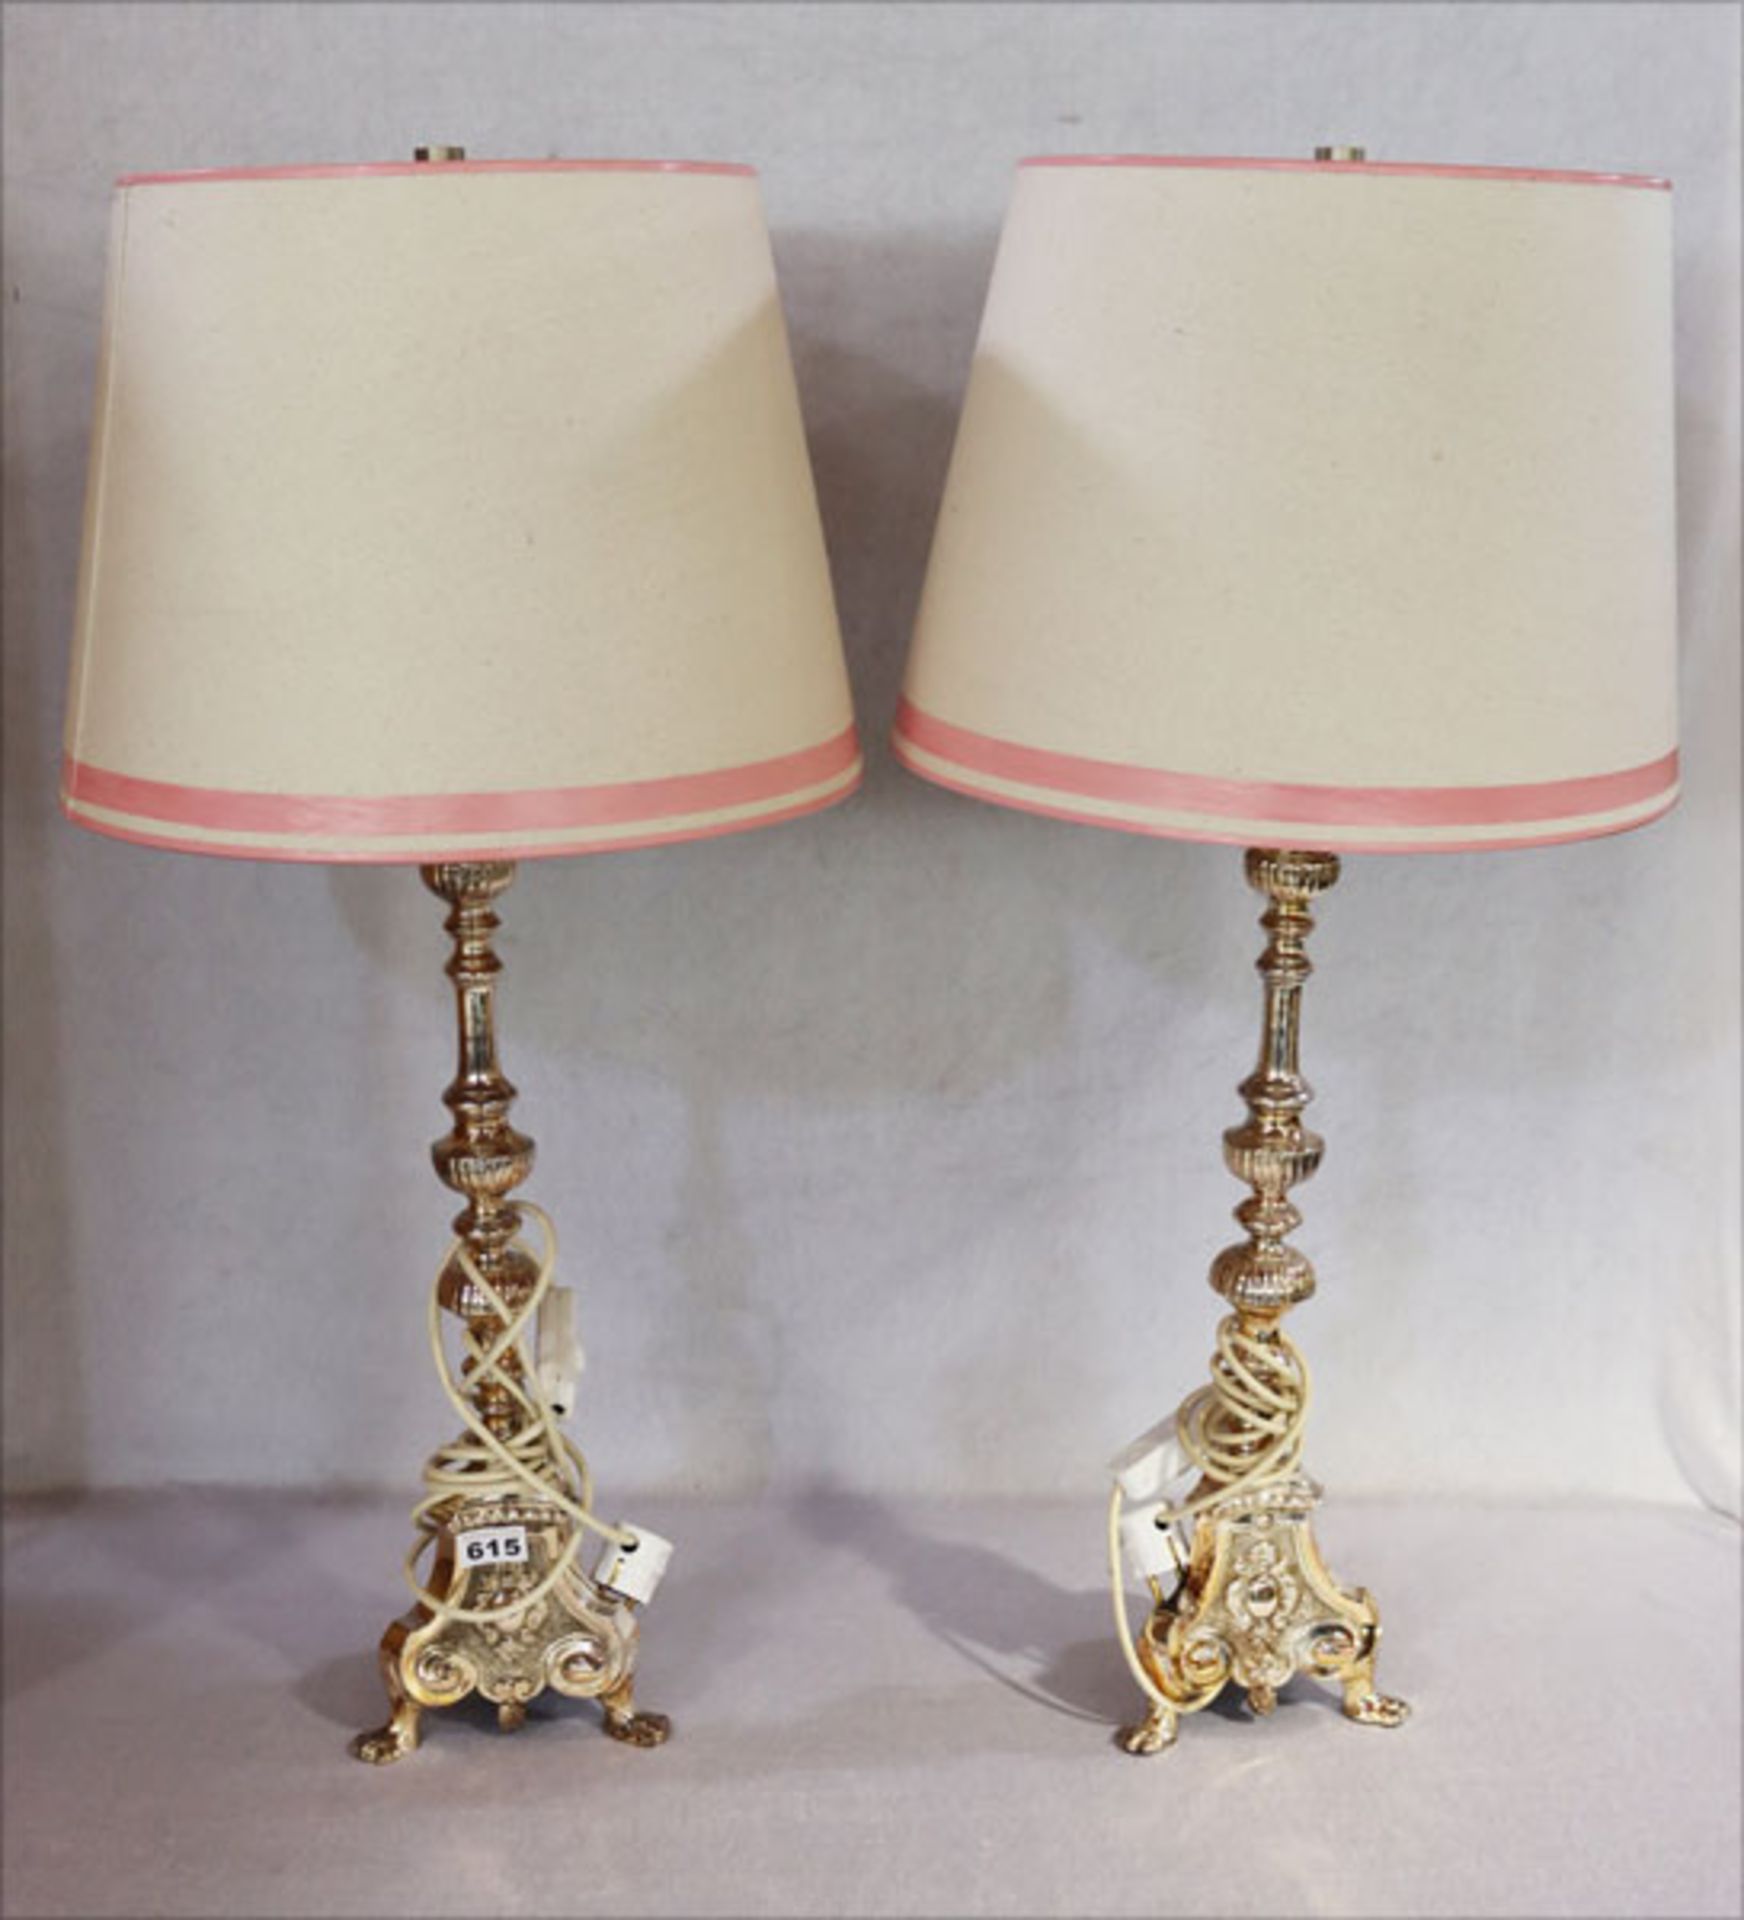 Paar Tischlampen mit versilbertem Lampenfuß und beigen Schirm, H 87 cm, Funktion nicht geprüft,